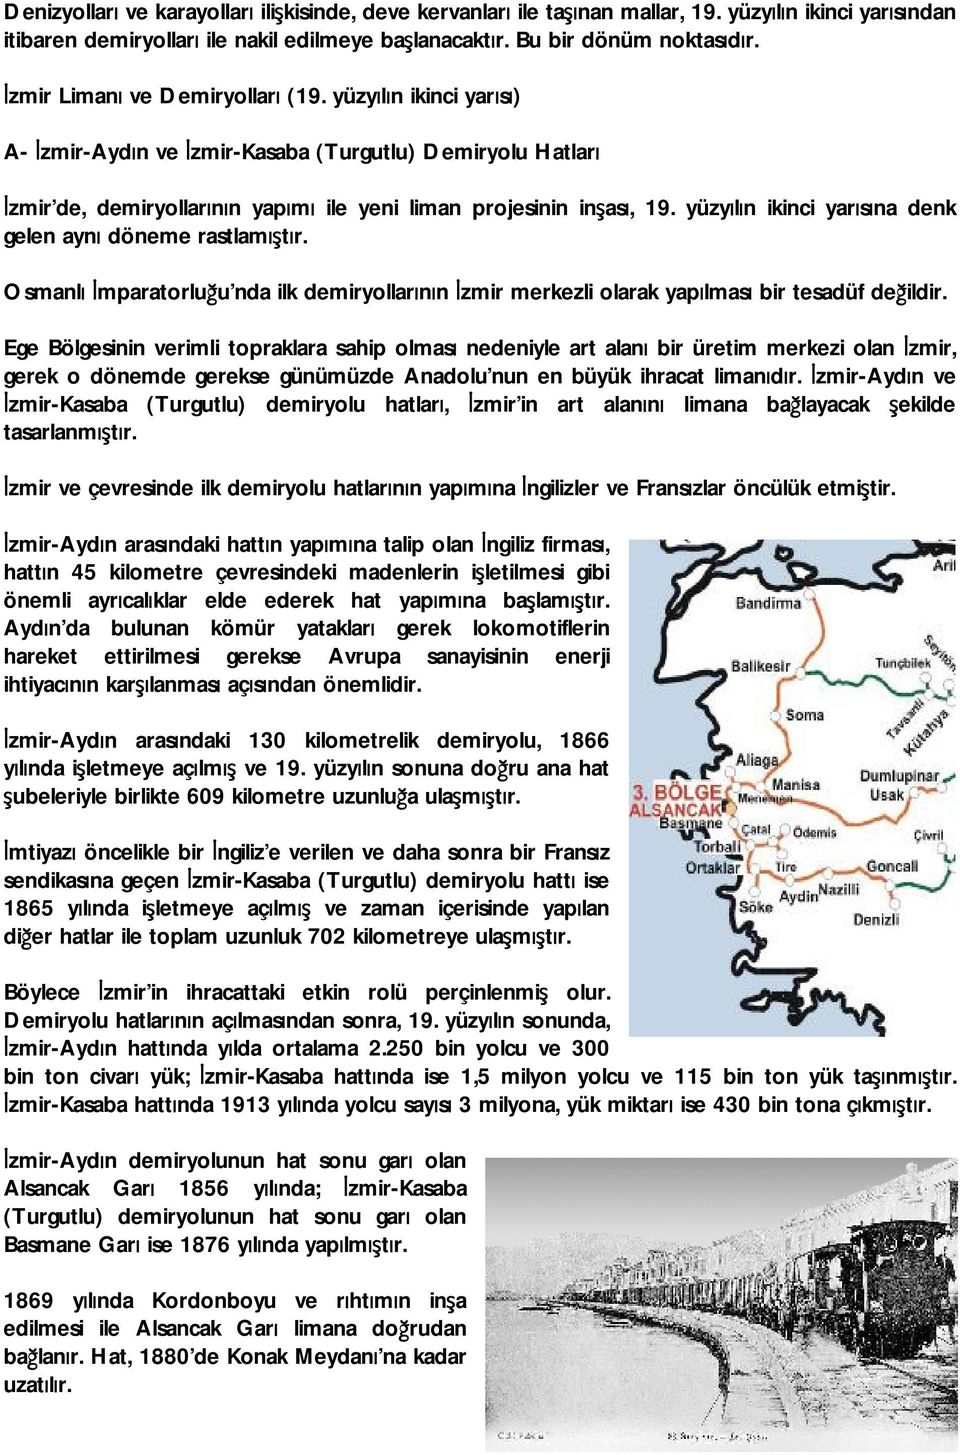 yüzyılın ikinci yarısına denk gelen aynı döneme rastlamıştır. Osmanlı İmparatorluğu nda ilk demiryollarının İzmir merkezli olarak yapılması bir tesadüf değildir.